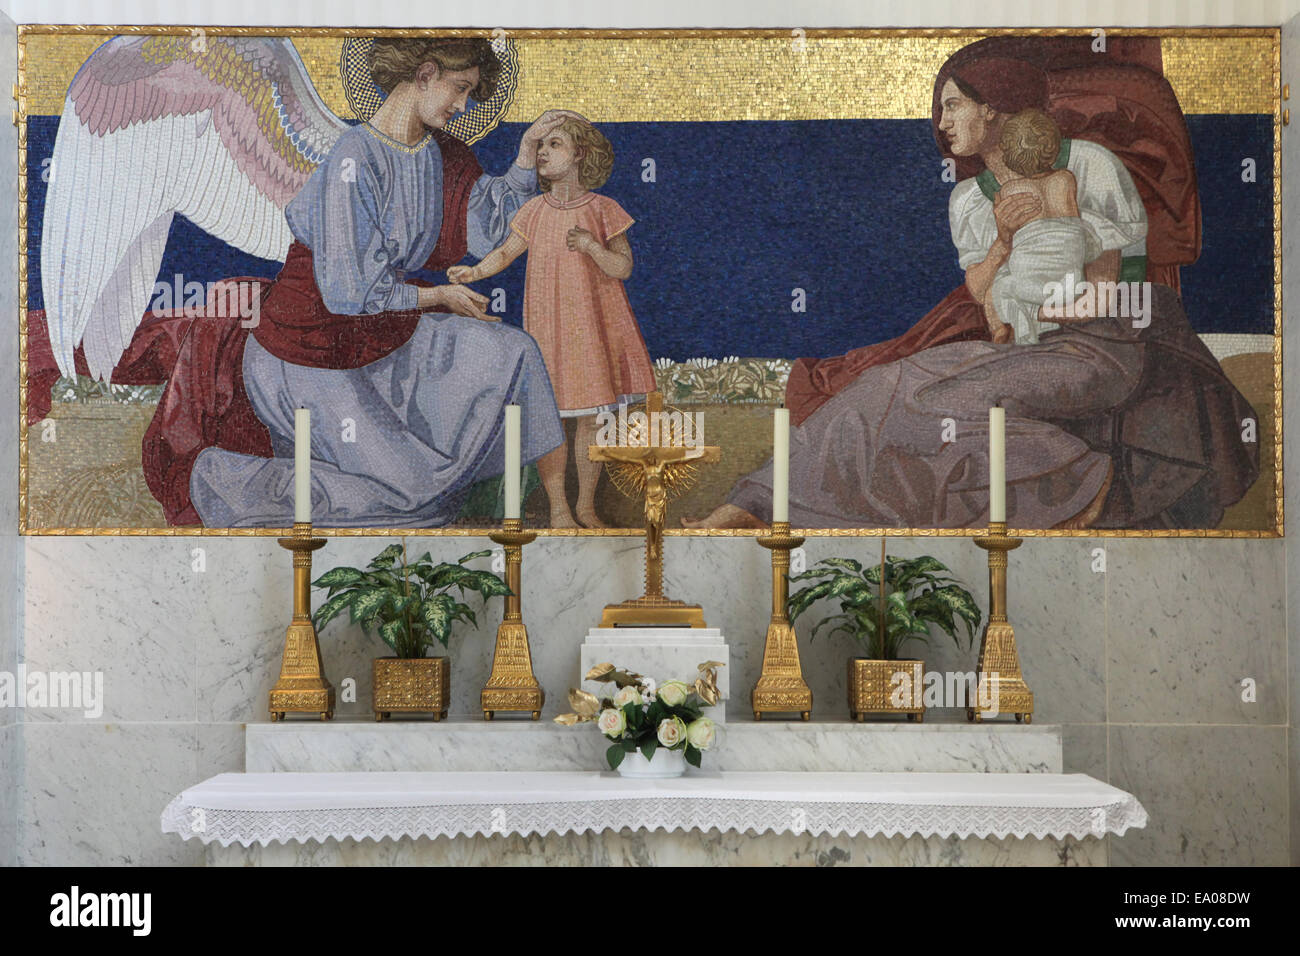 Angelo e una madre con i bambini. Mosaico progettato da Rudolf Jettmar nel sito altare nella chiesa Steinhof a Vienna, Austria. Foto Stock